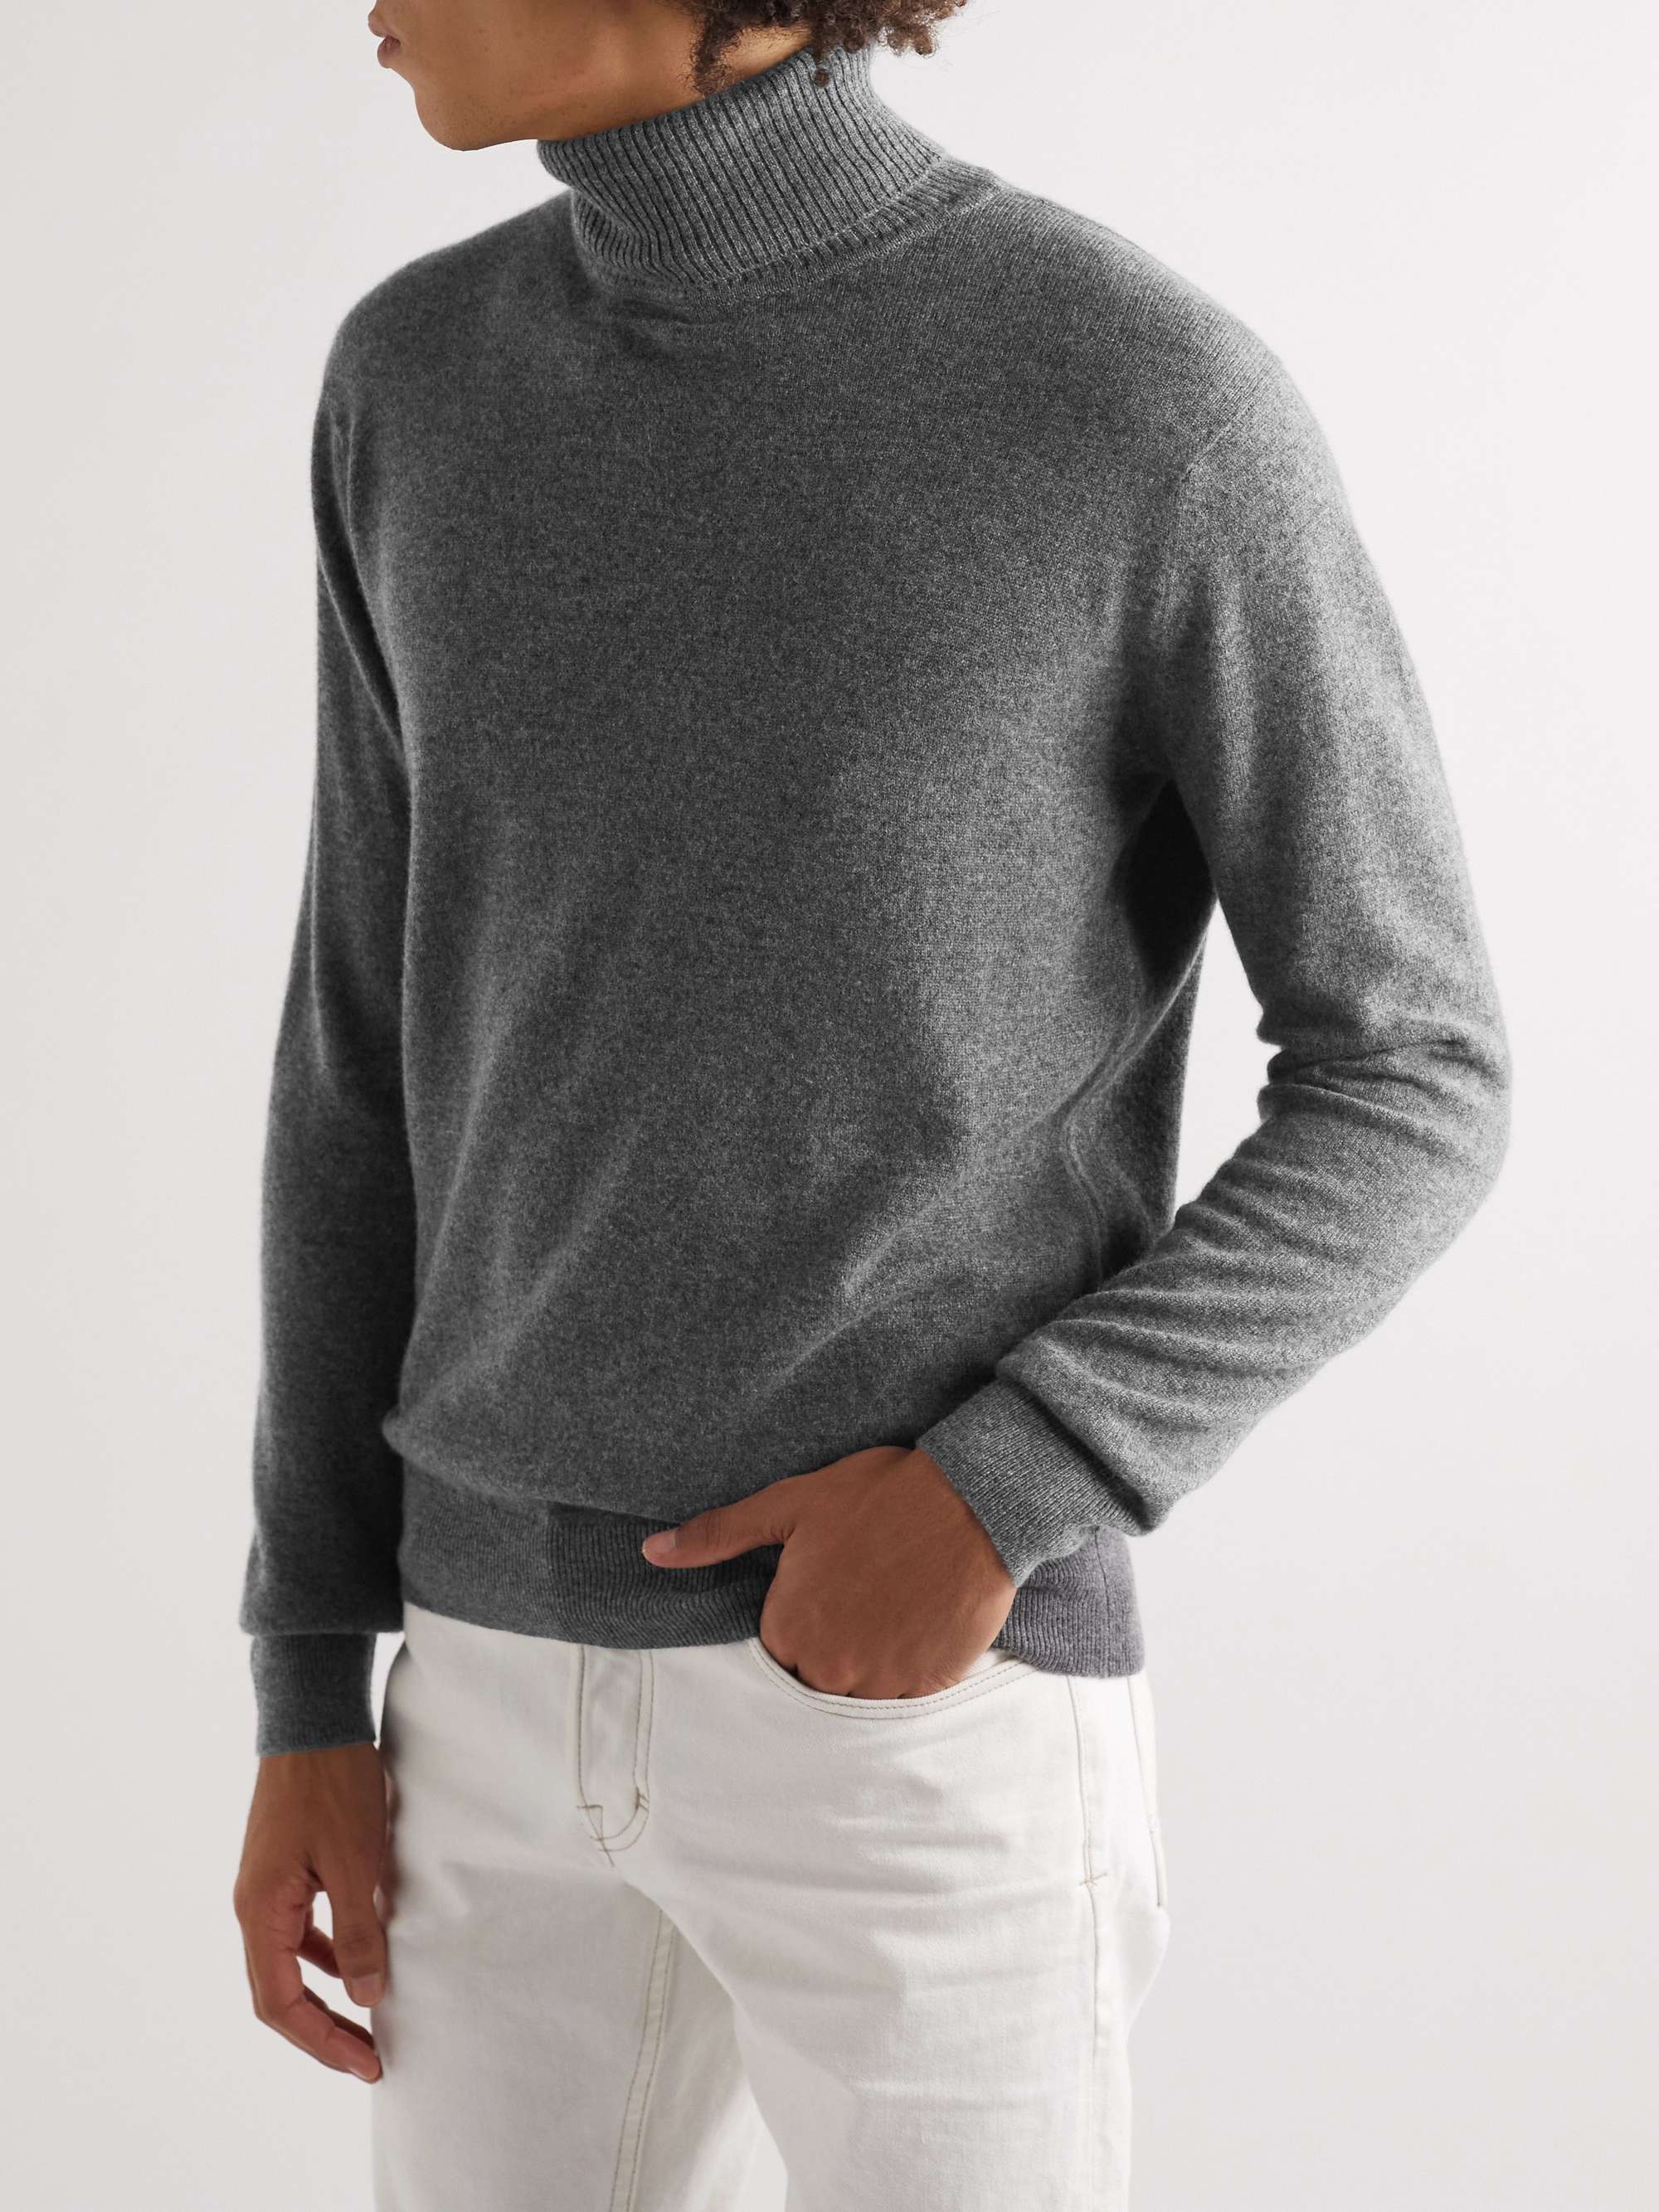 TOM FORD Cashmere Rollneck Sweater for Men | MR PORTER